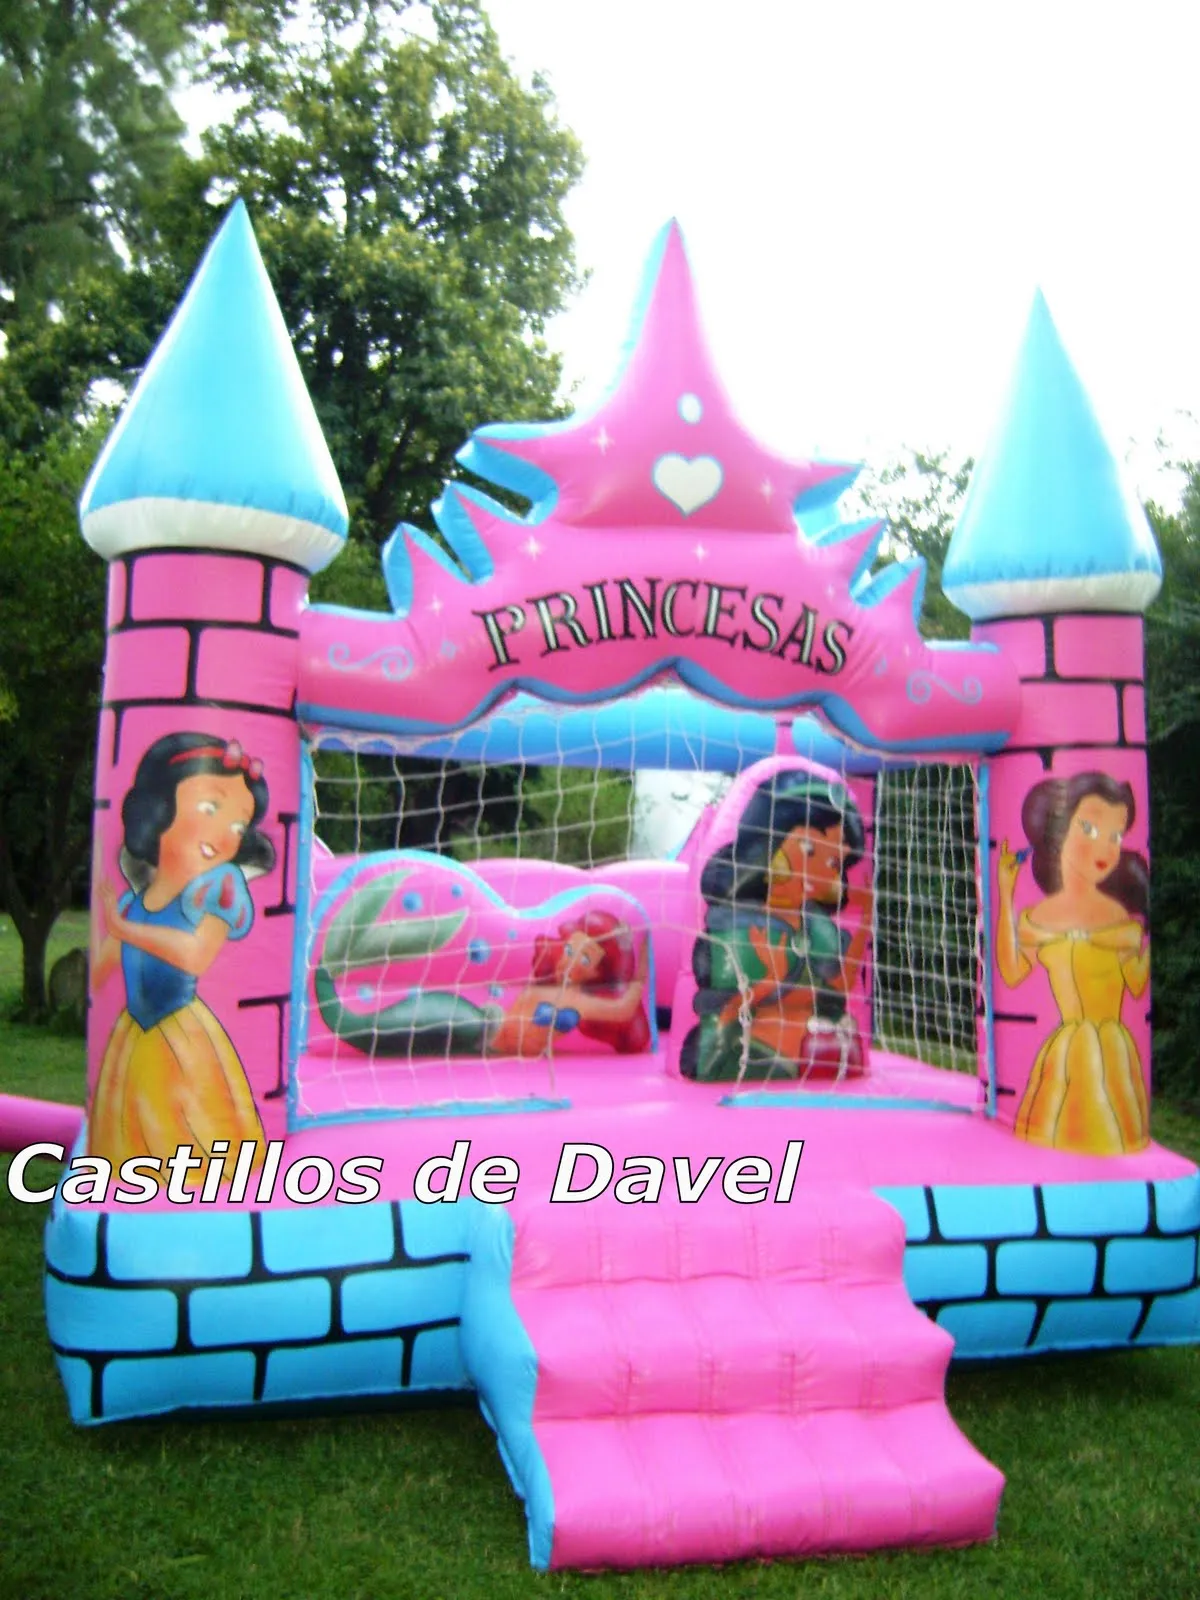 Castillos de Davel: Castillo de Princesas